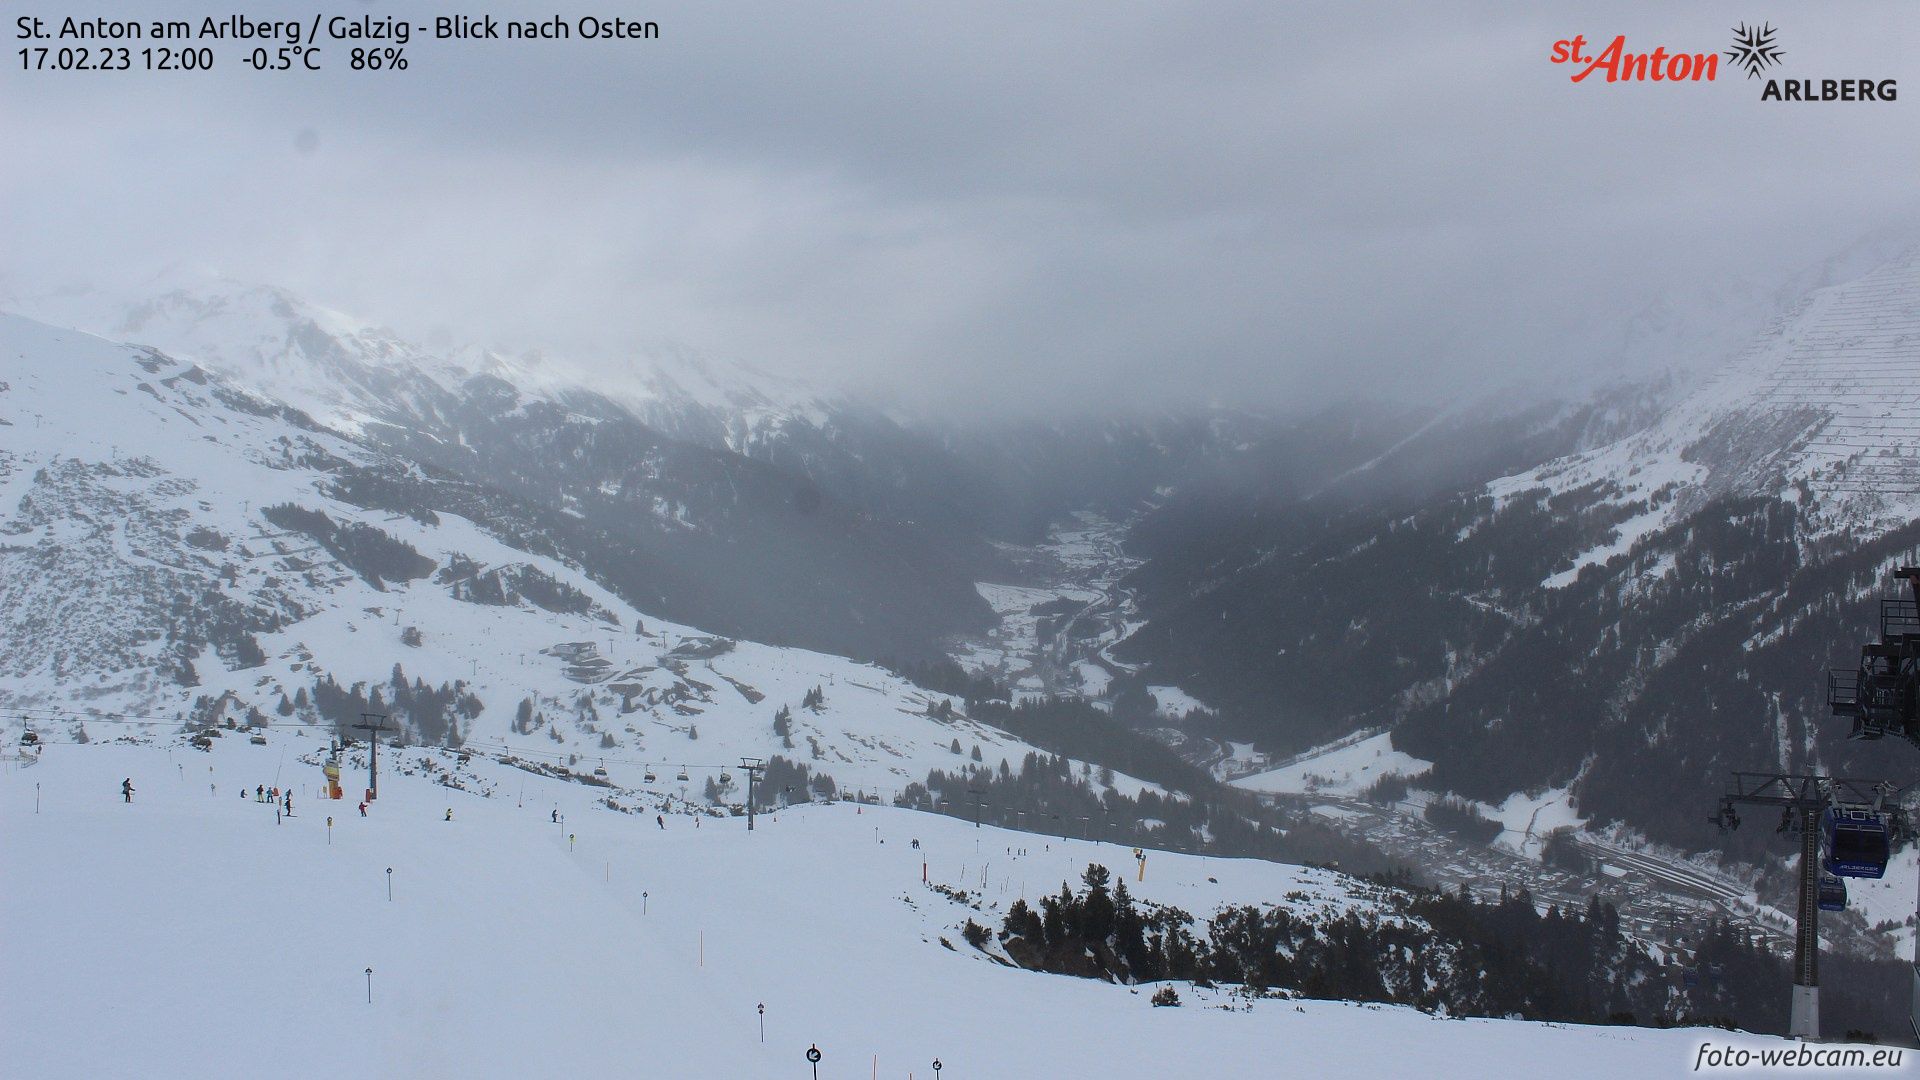 Overwegend bewolkt en lichte neerslag in St. Anton am Arlberg (foto-webcam.eu)